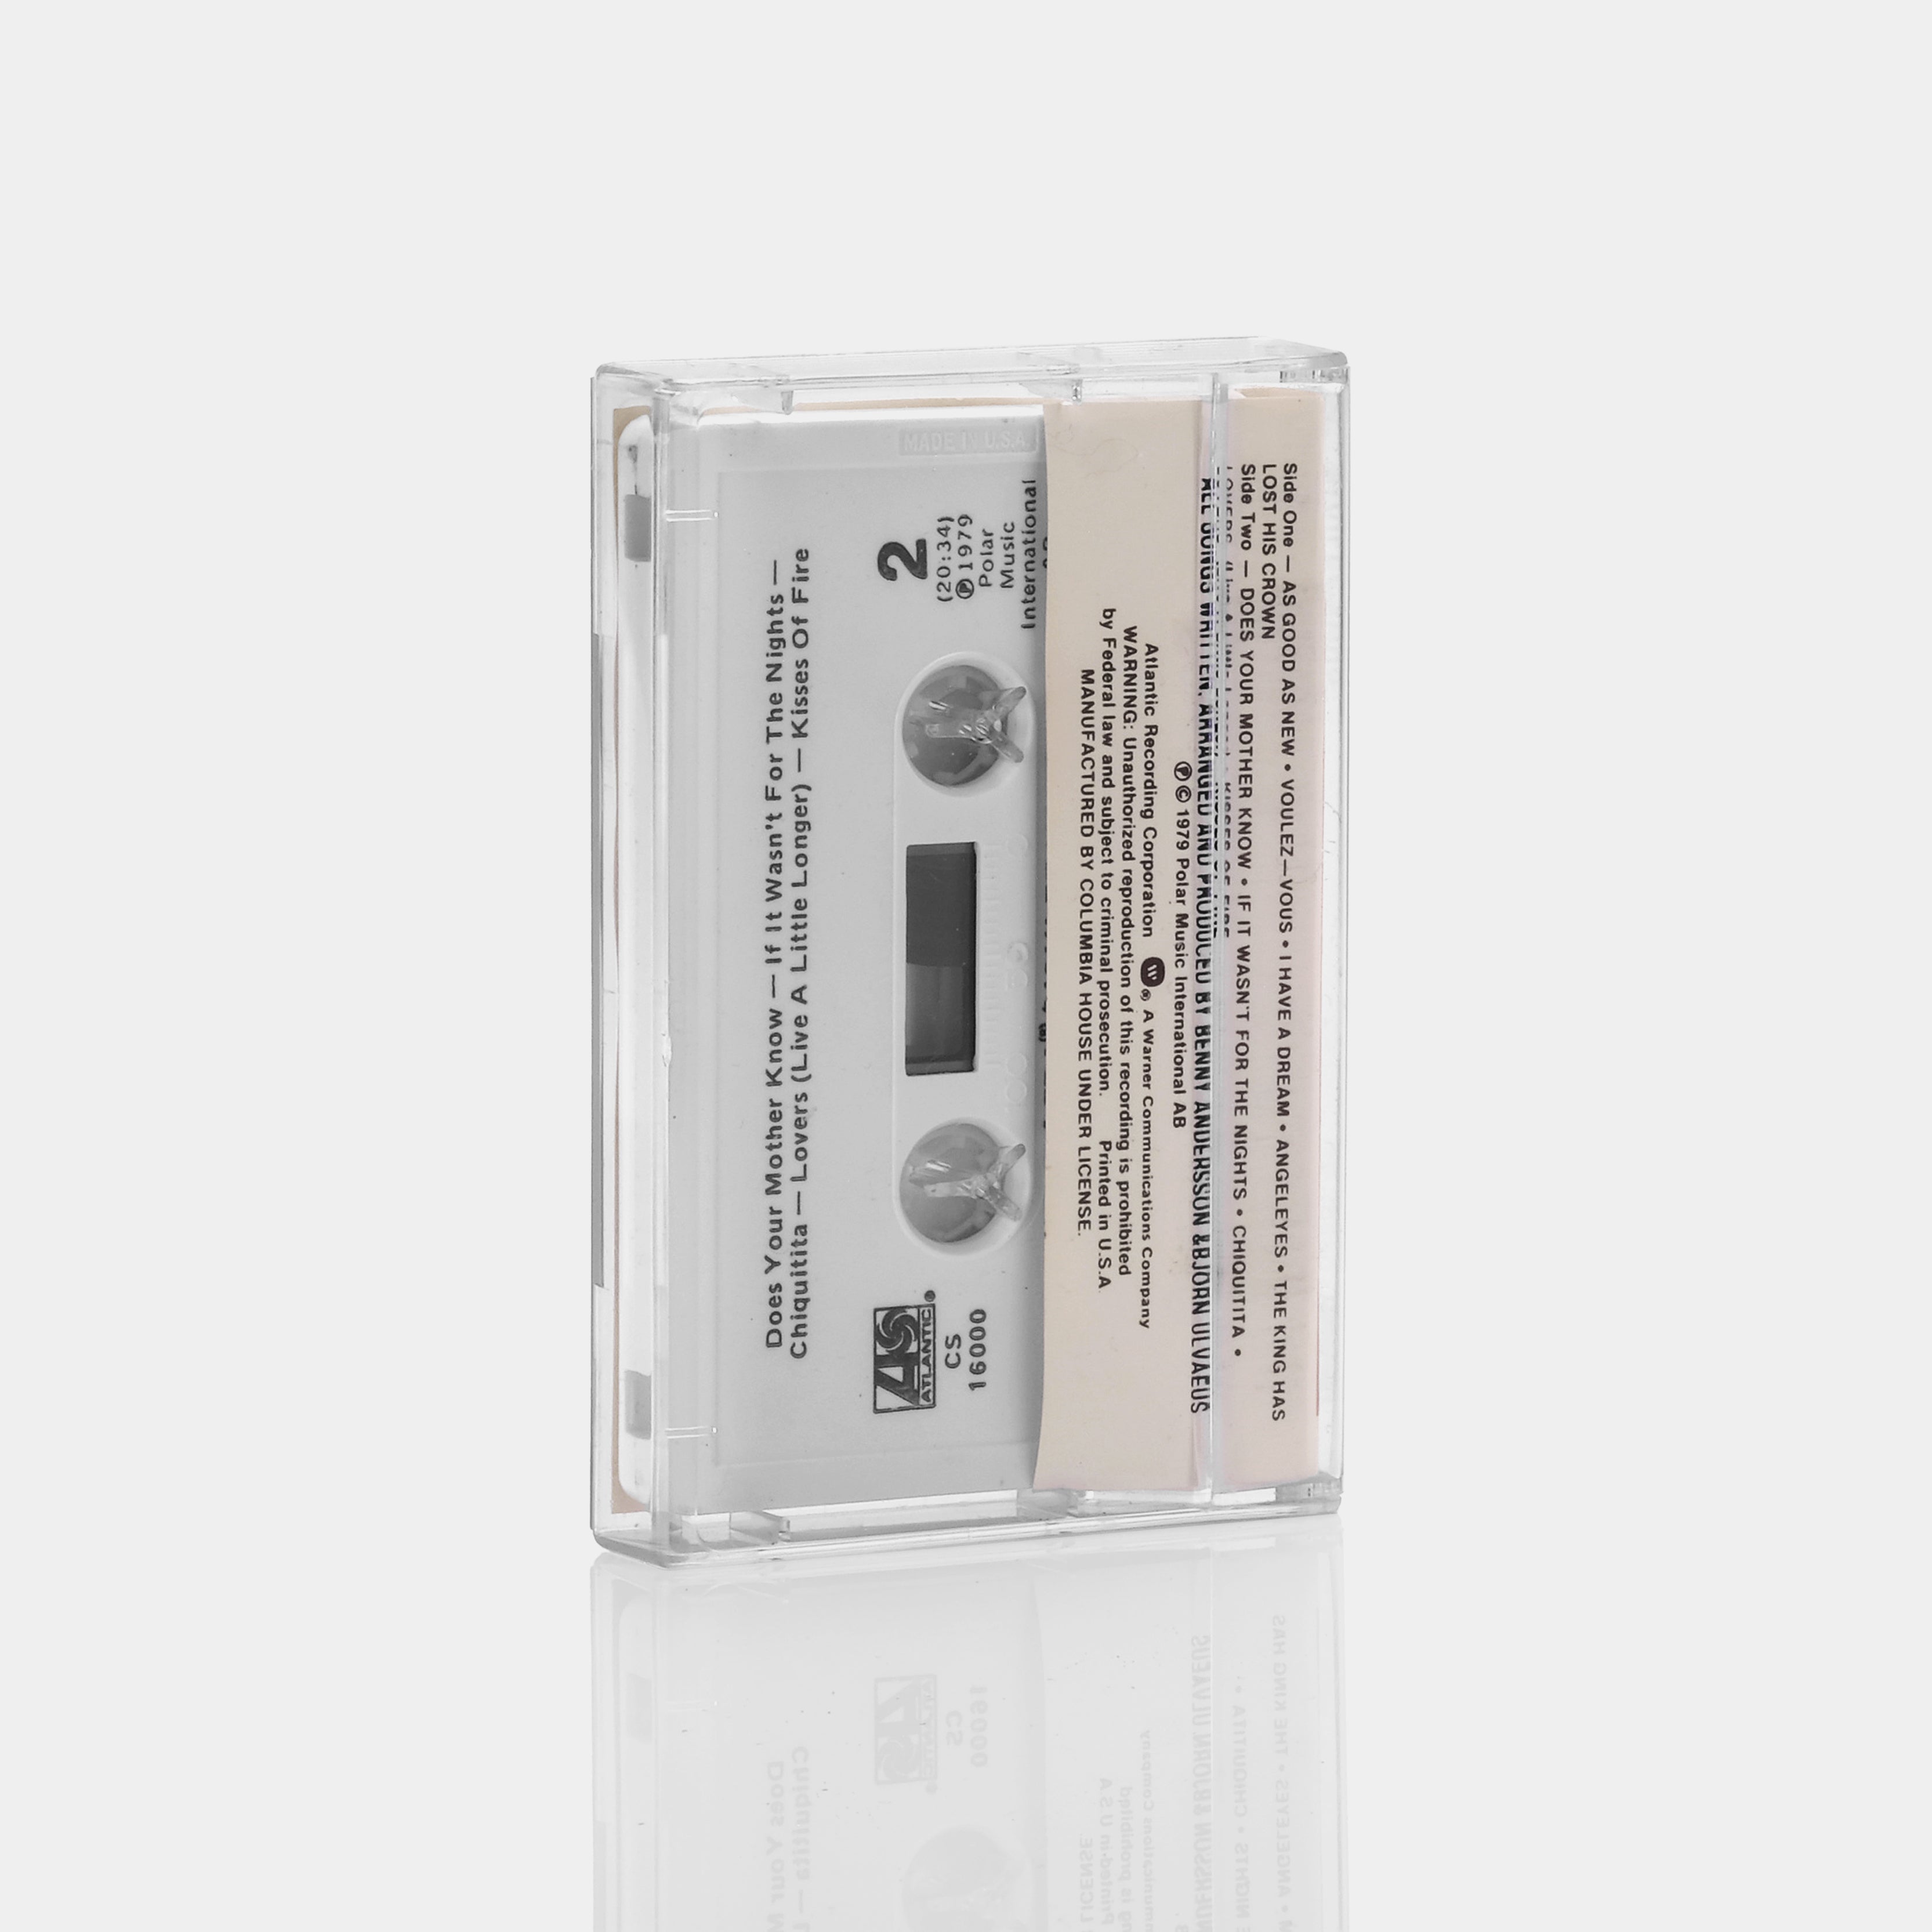 ABBA - Voulez-Vous Cassette Tape